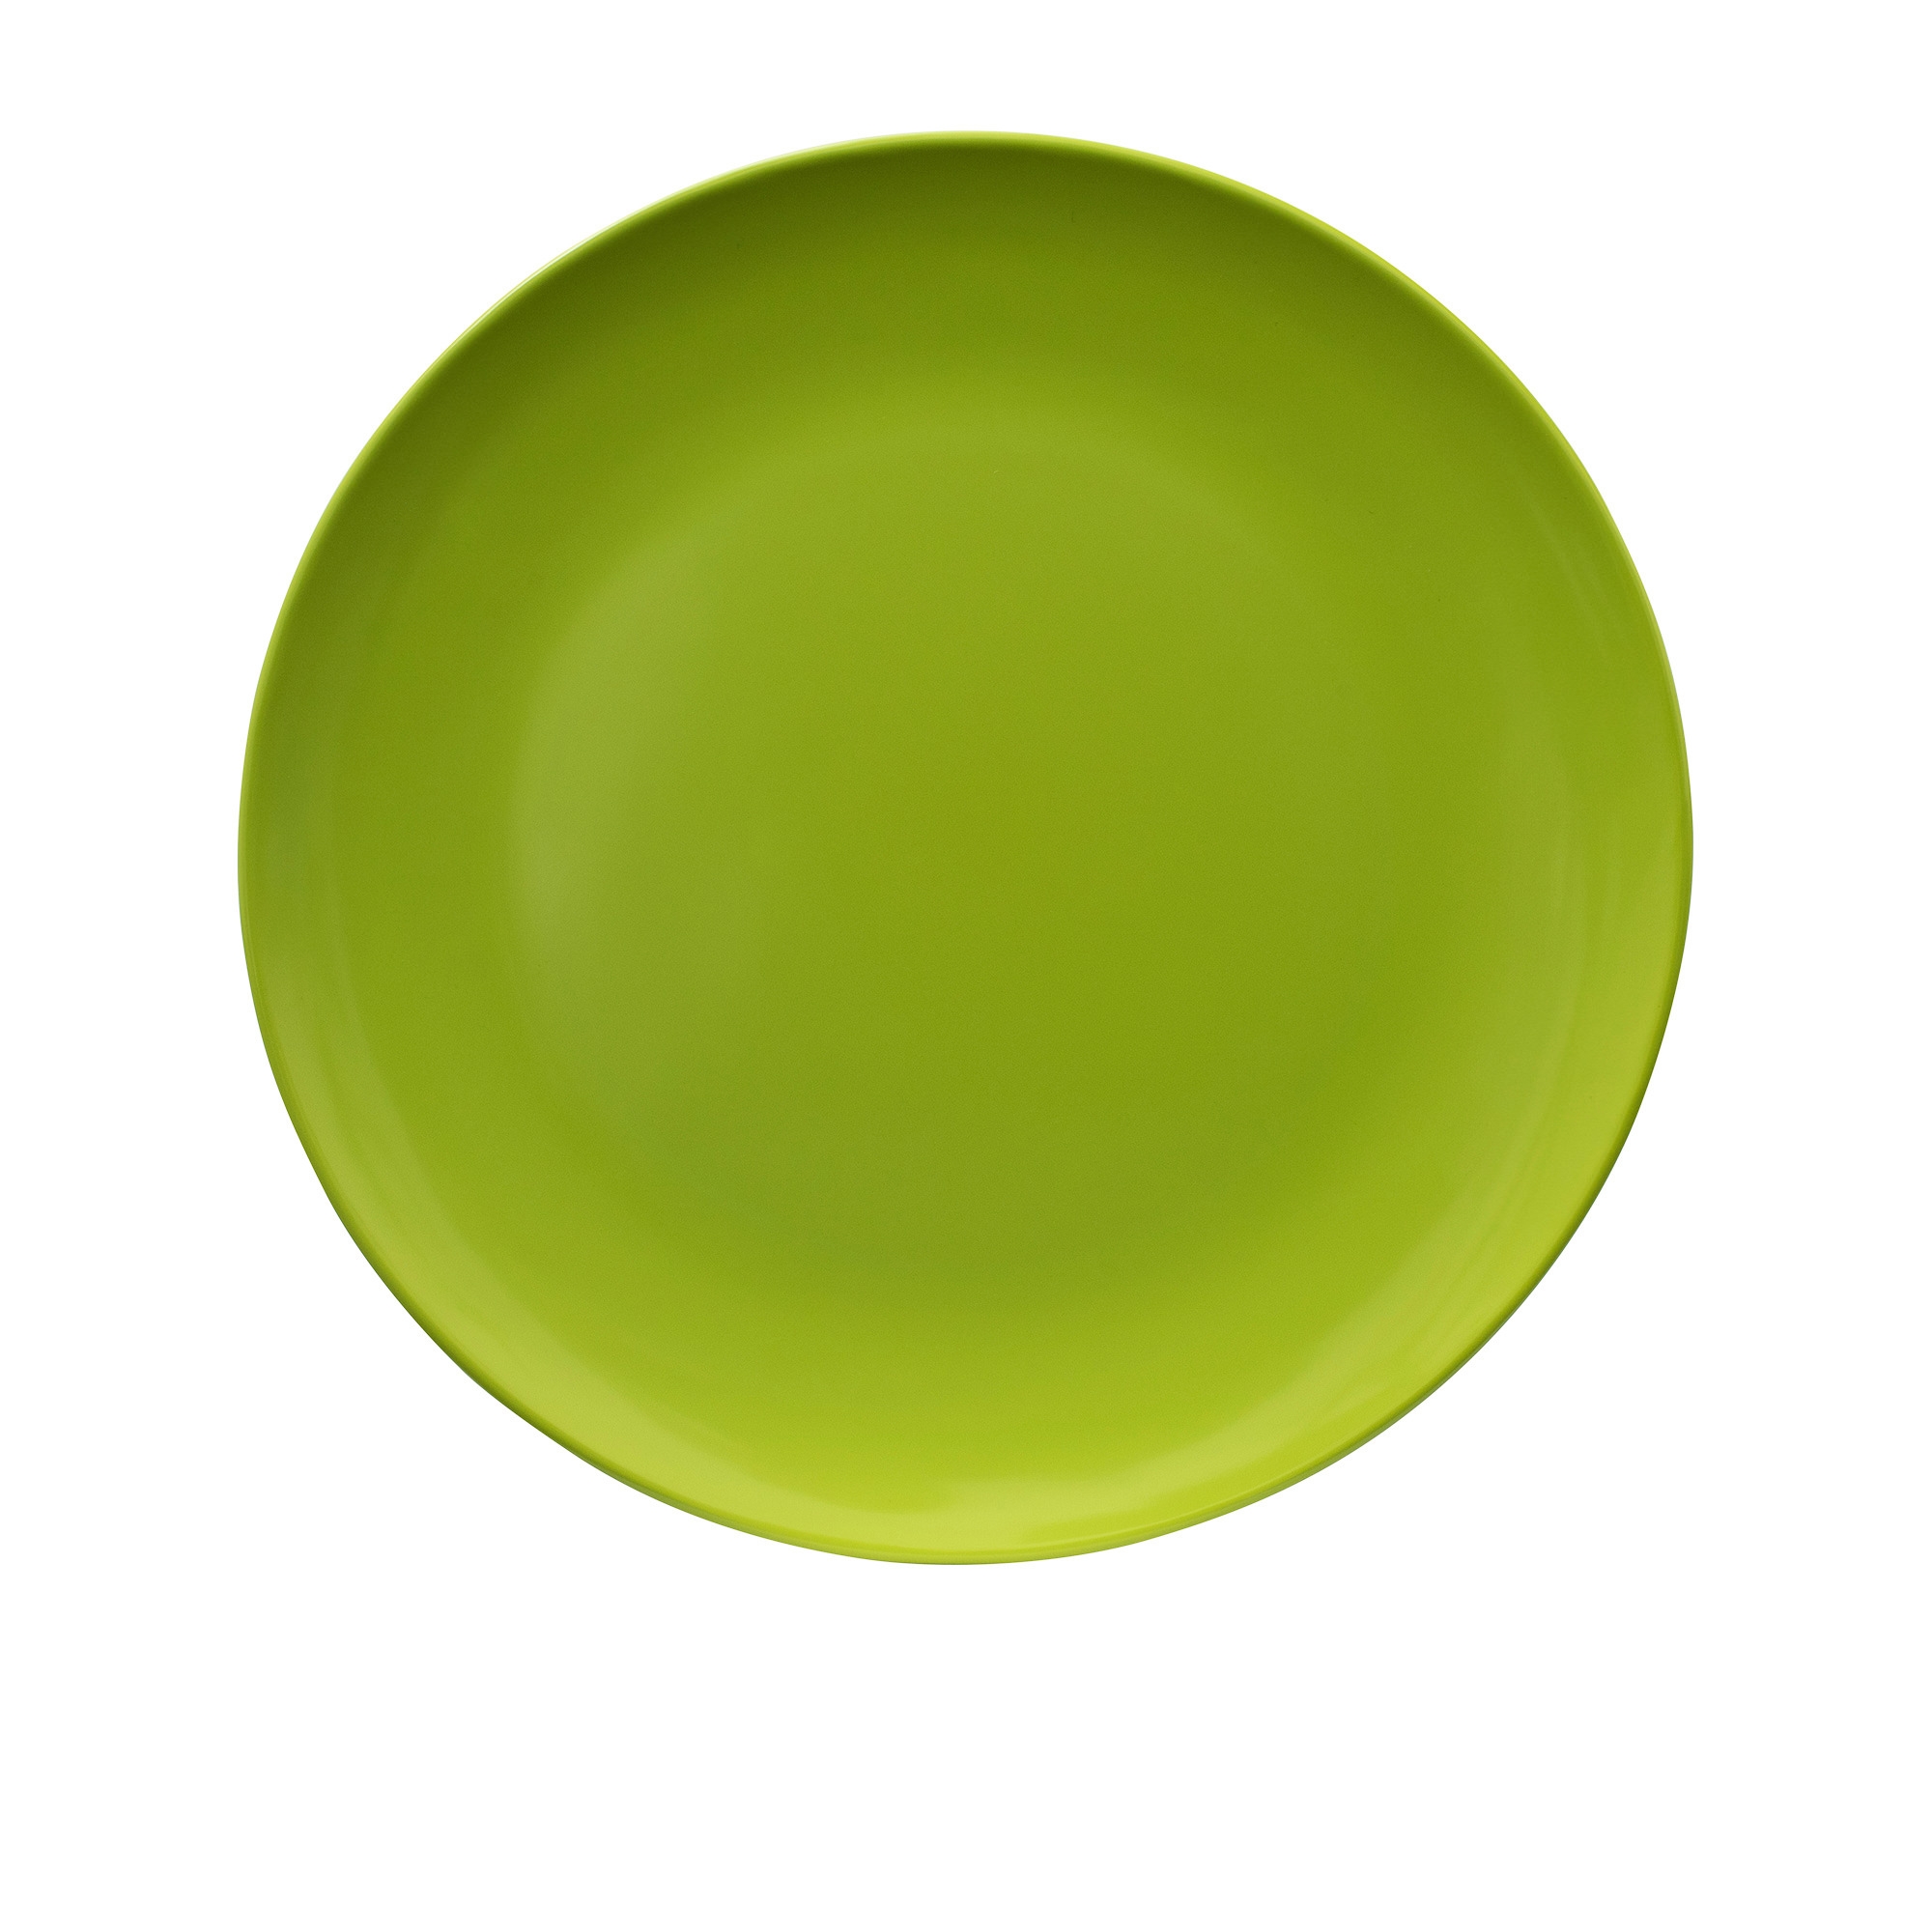 Serroni Melamine Plate 21cm Lime Image 1